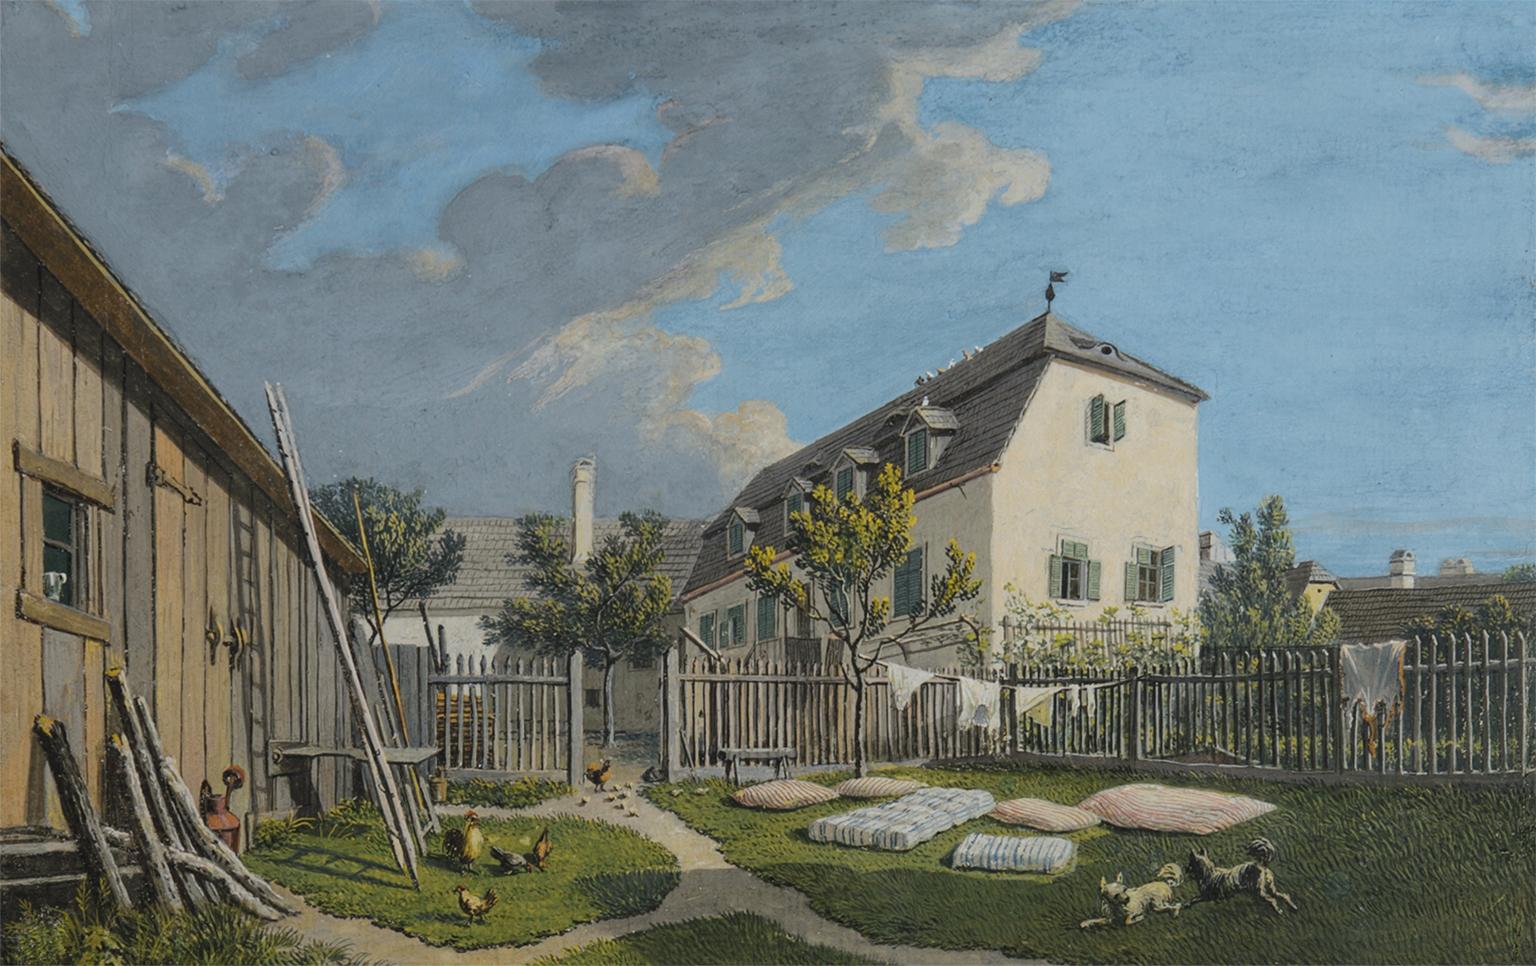 Unknown Landscape Art - Maison à Heiligenstadt - 19th century painting, a domestic scene outdoors